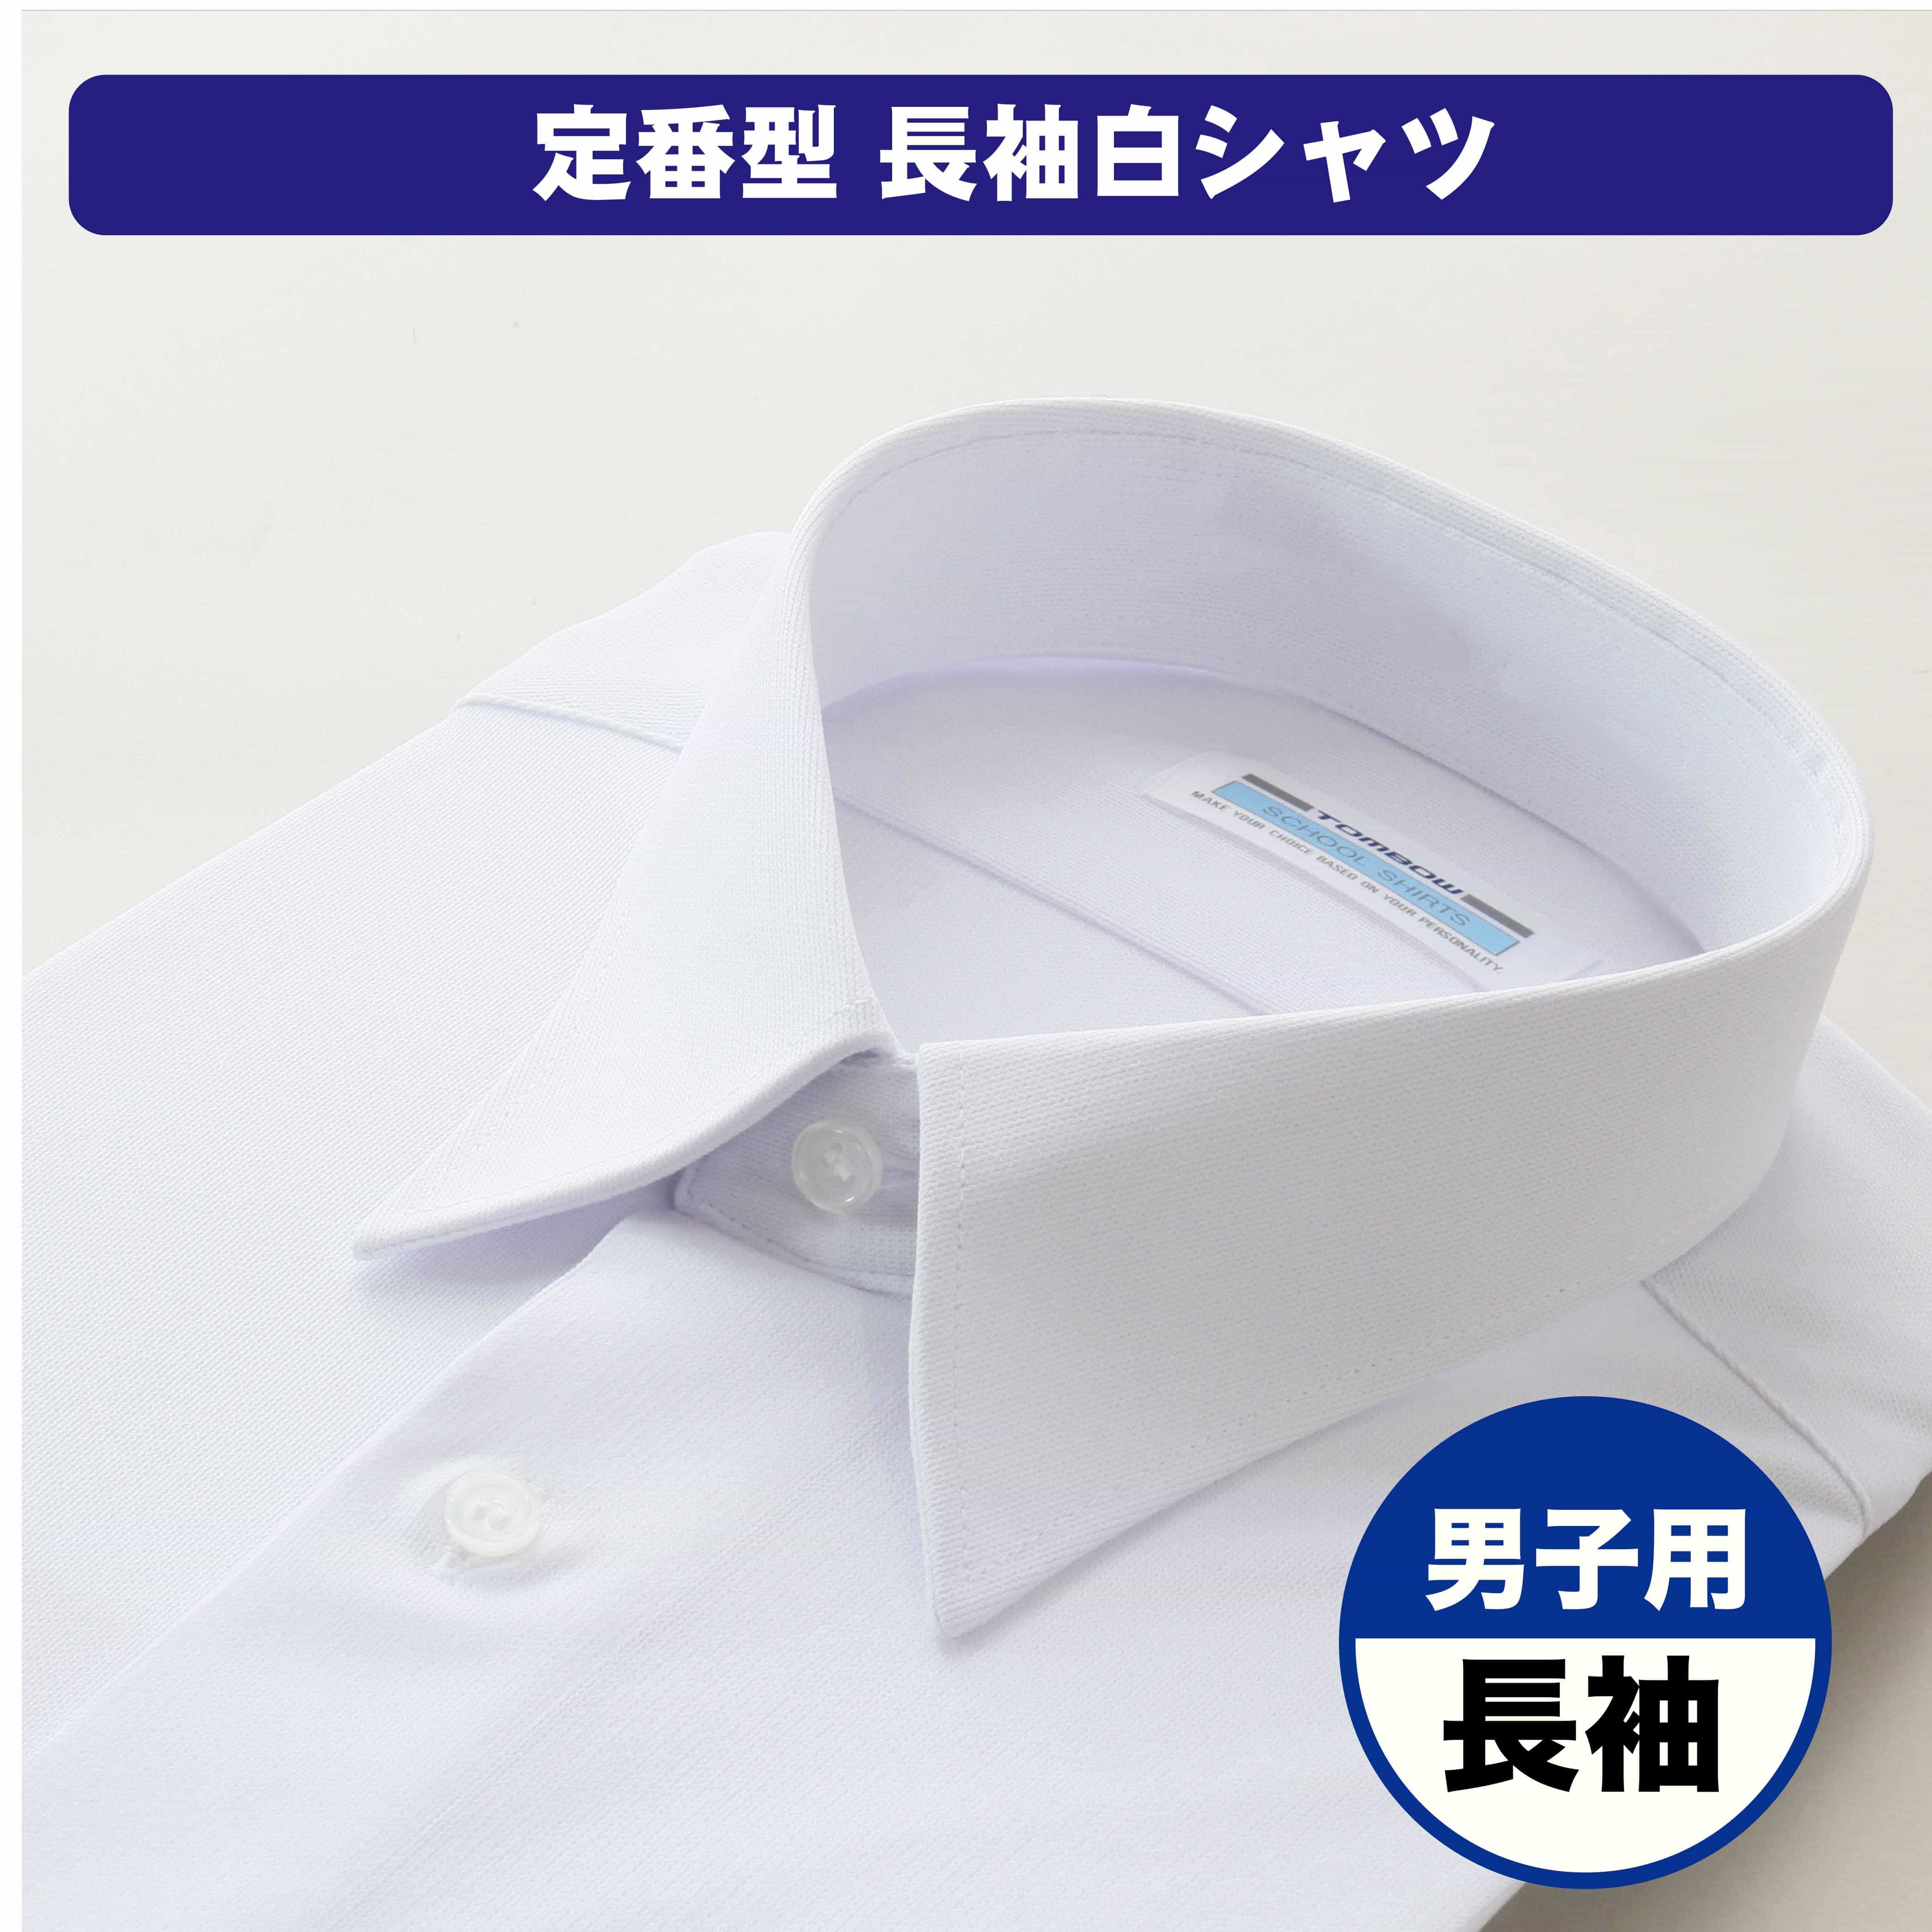 男子 長袖 カッターシャツ ワイシャツ(155A 白): スクールウエア